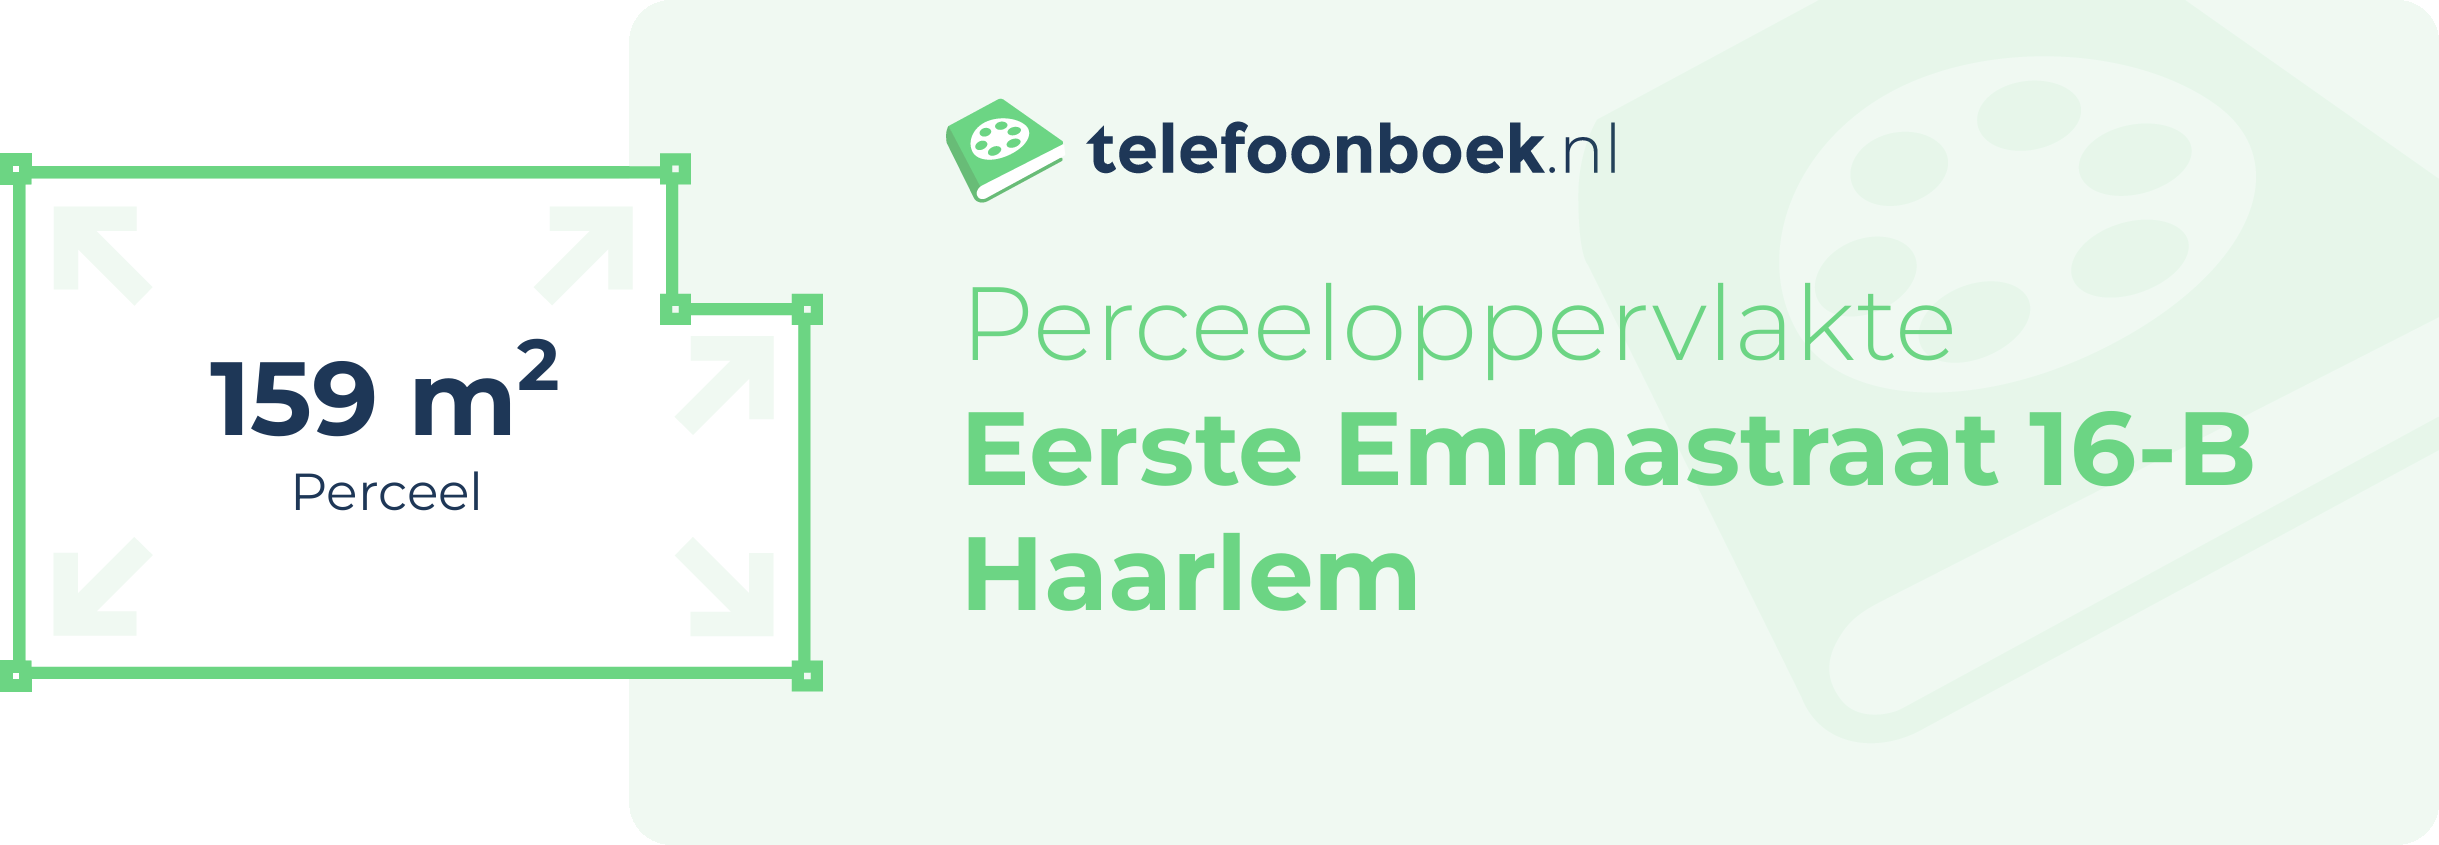 Perceeloppervlakte Eerste Emmastraat 16-B Haarlem